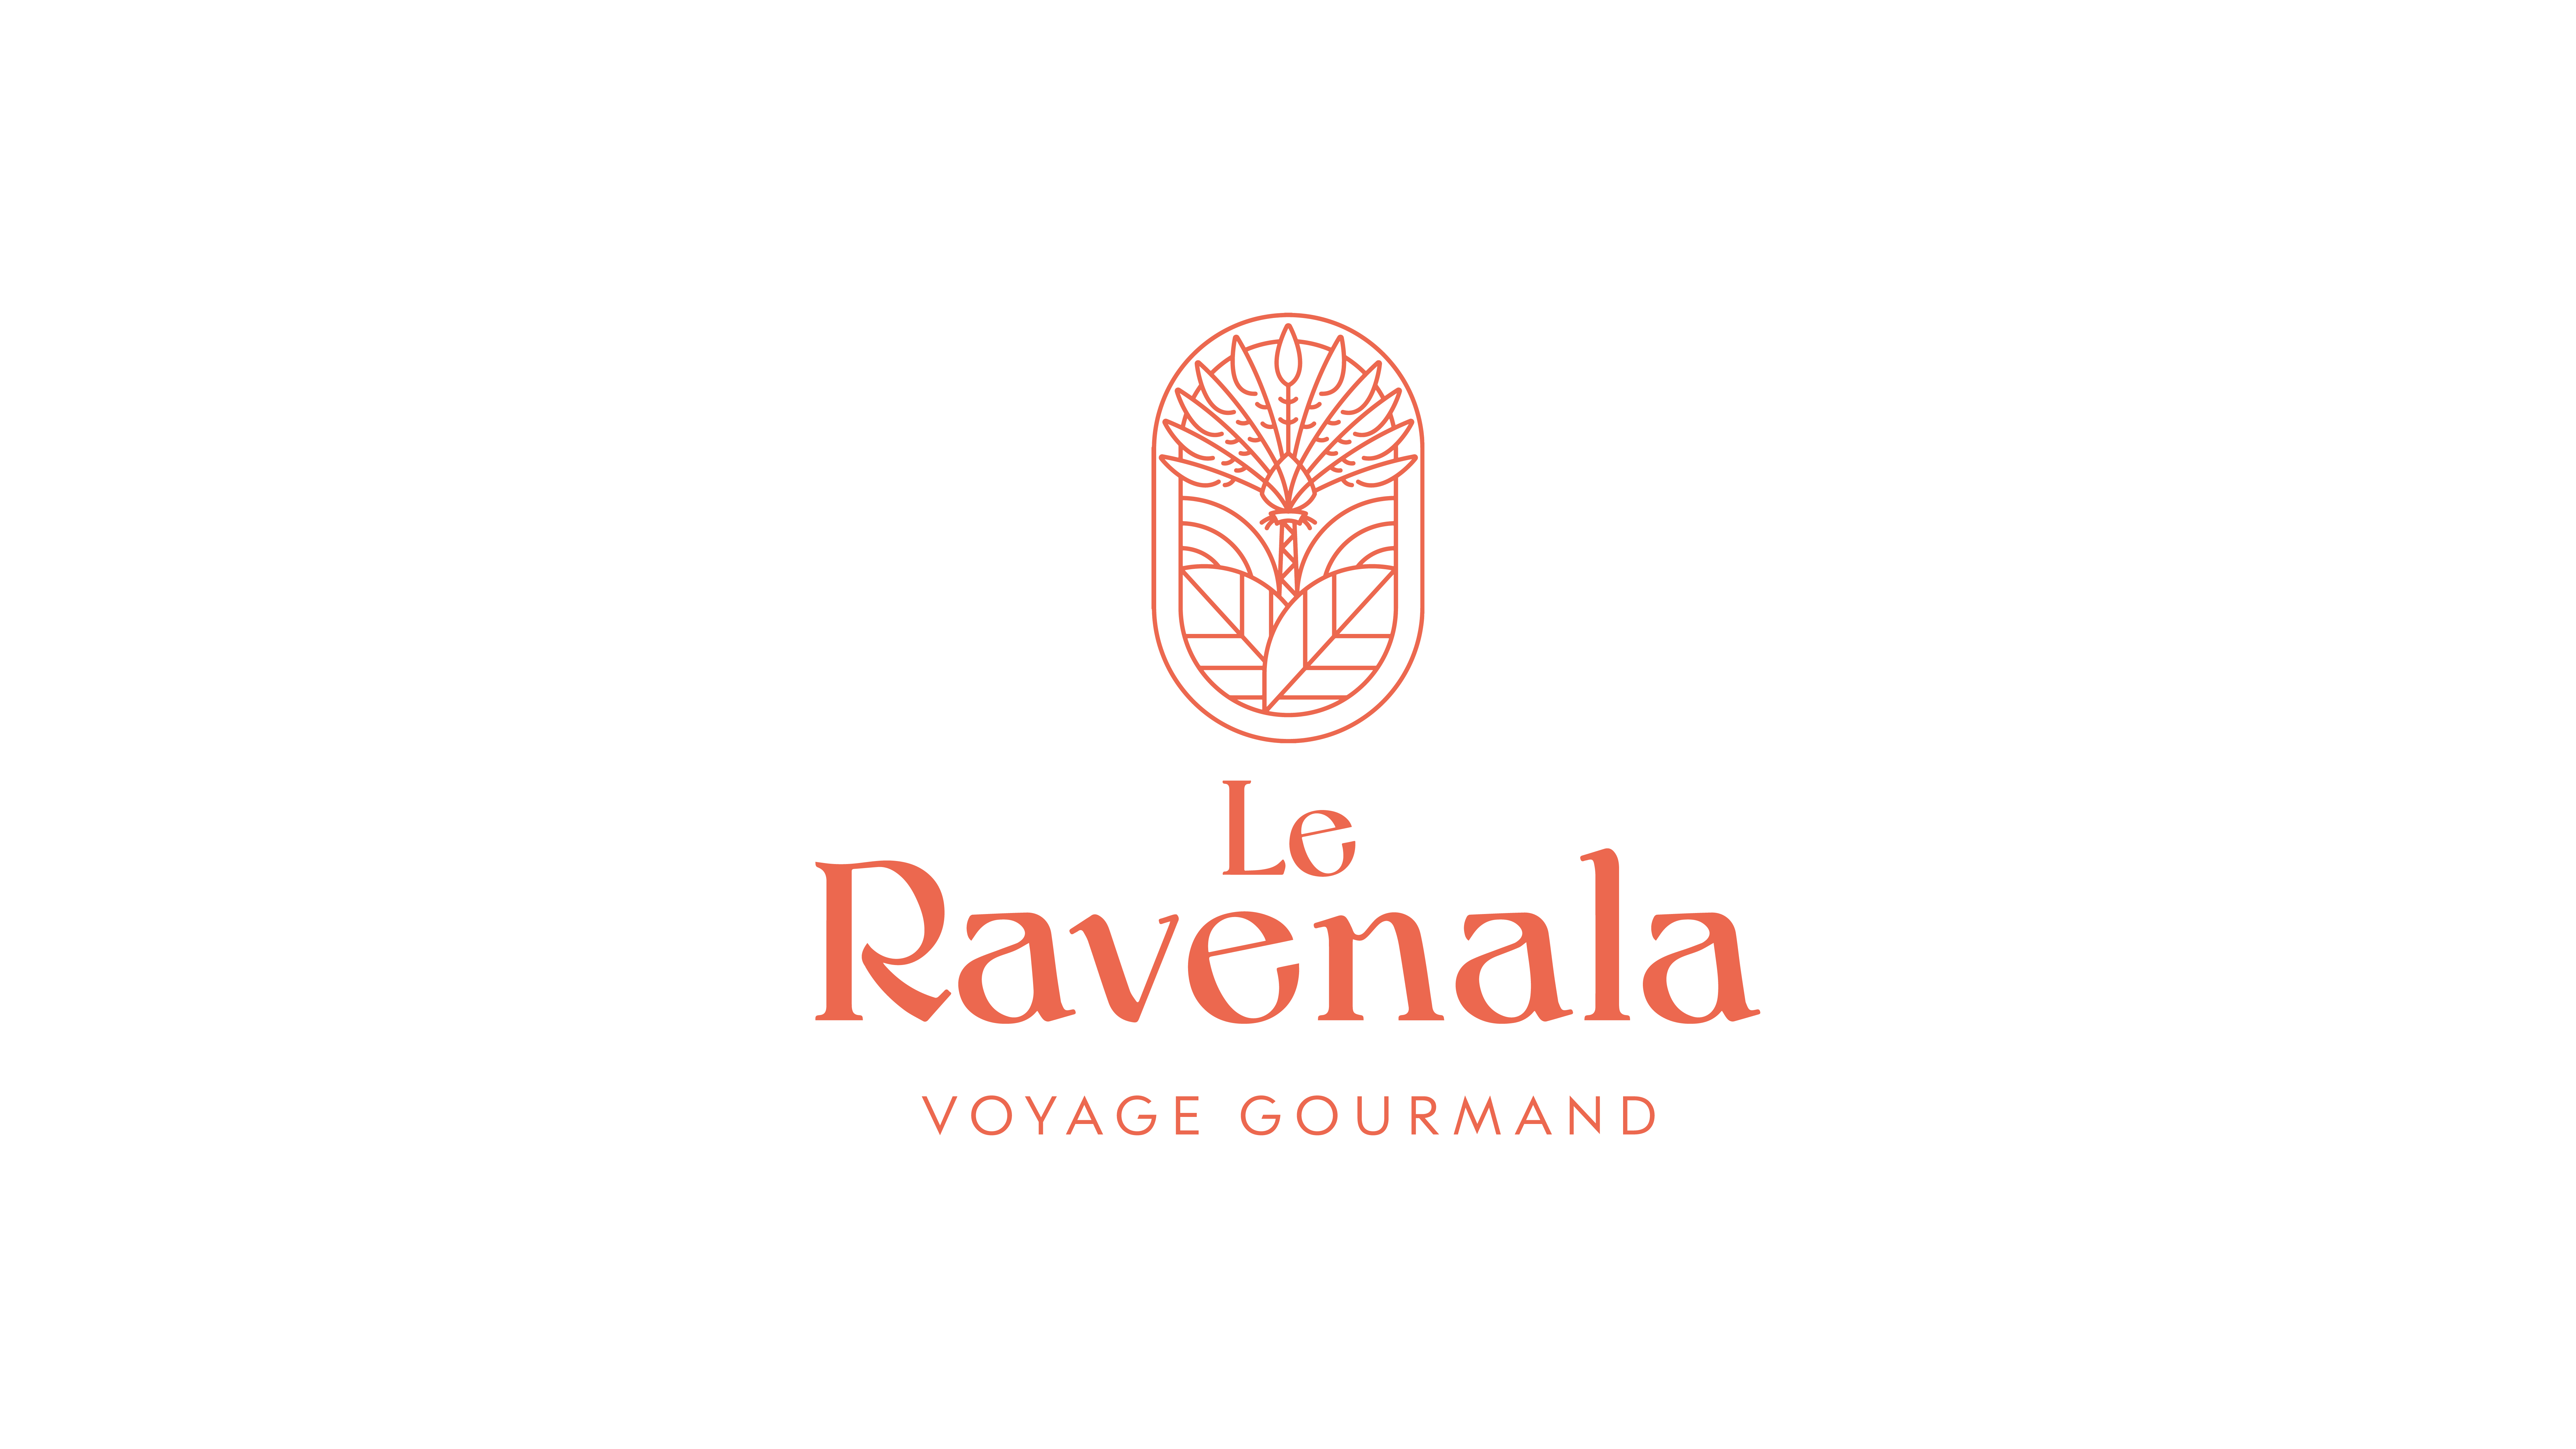 Le Ravenala